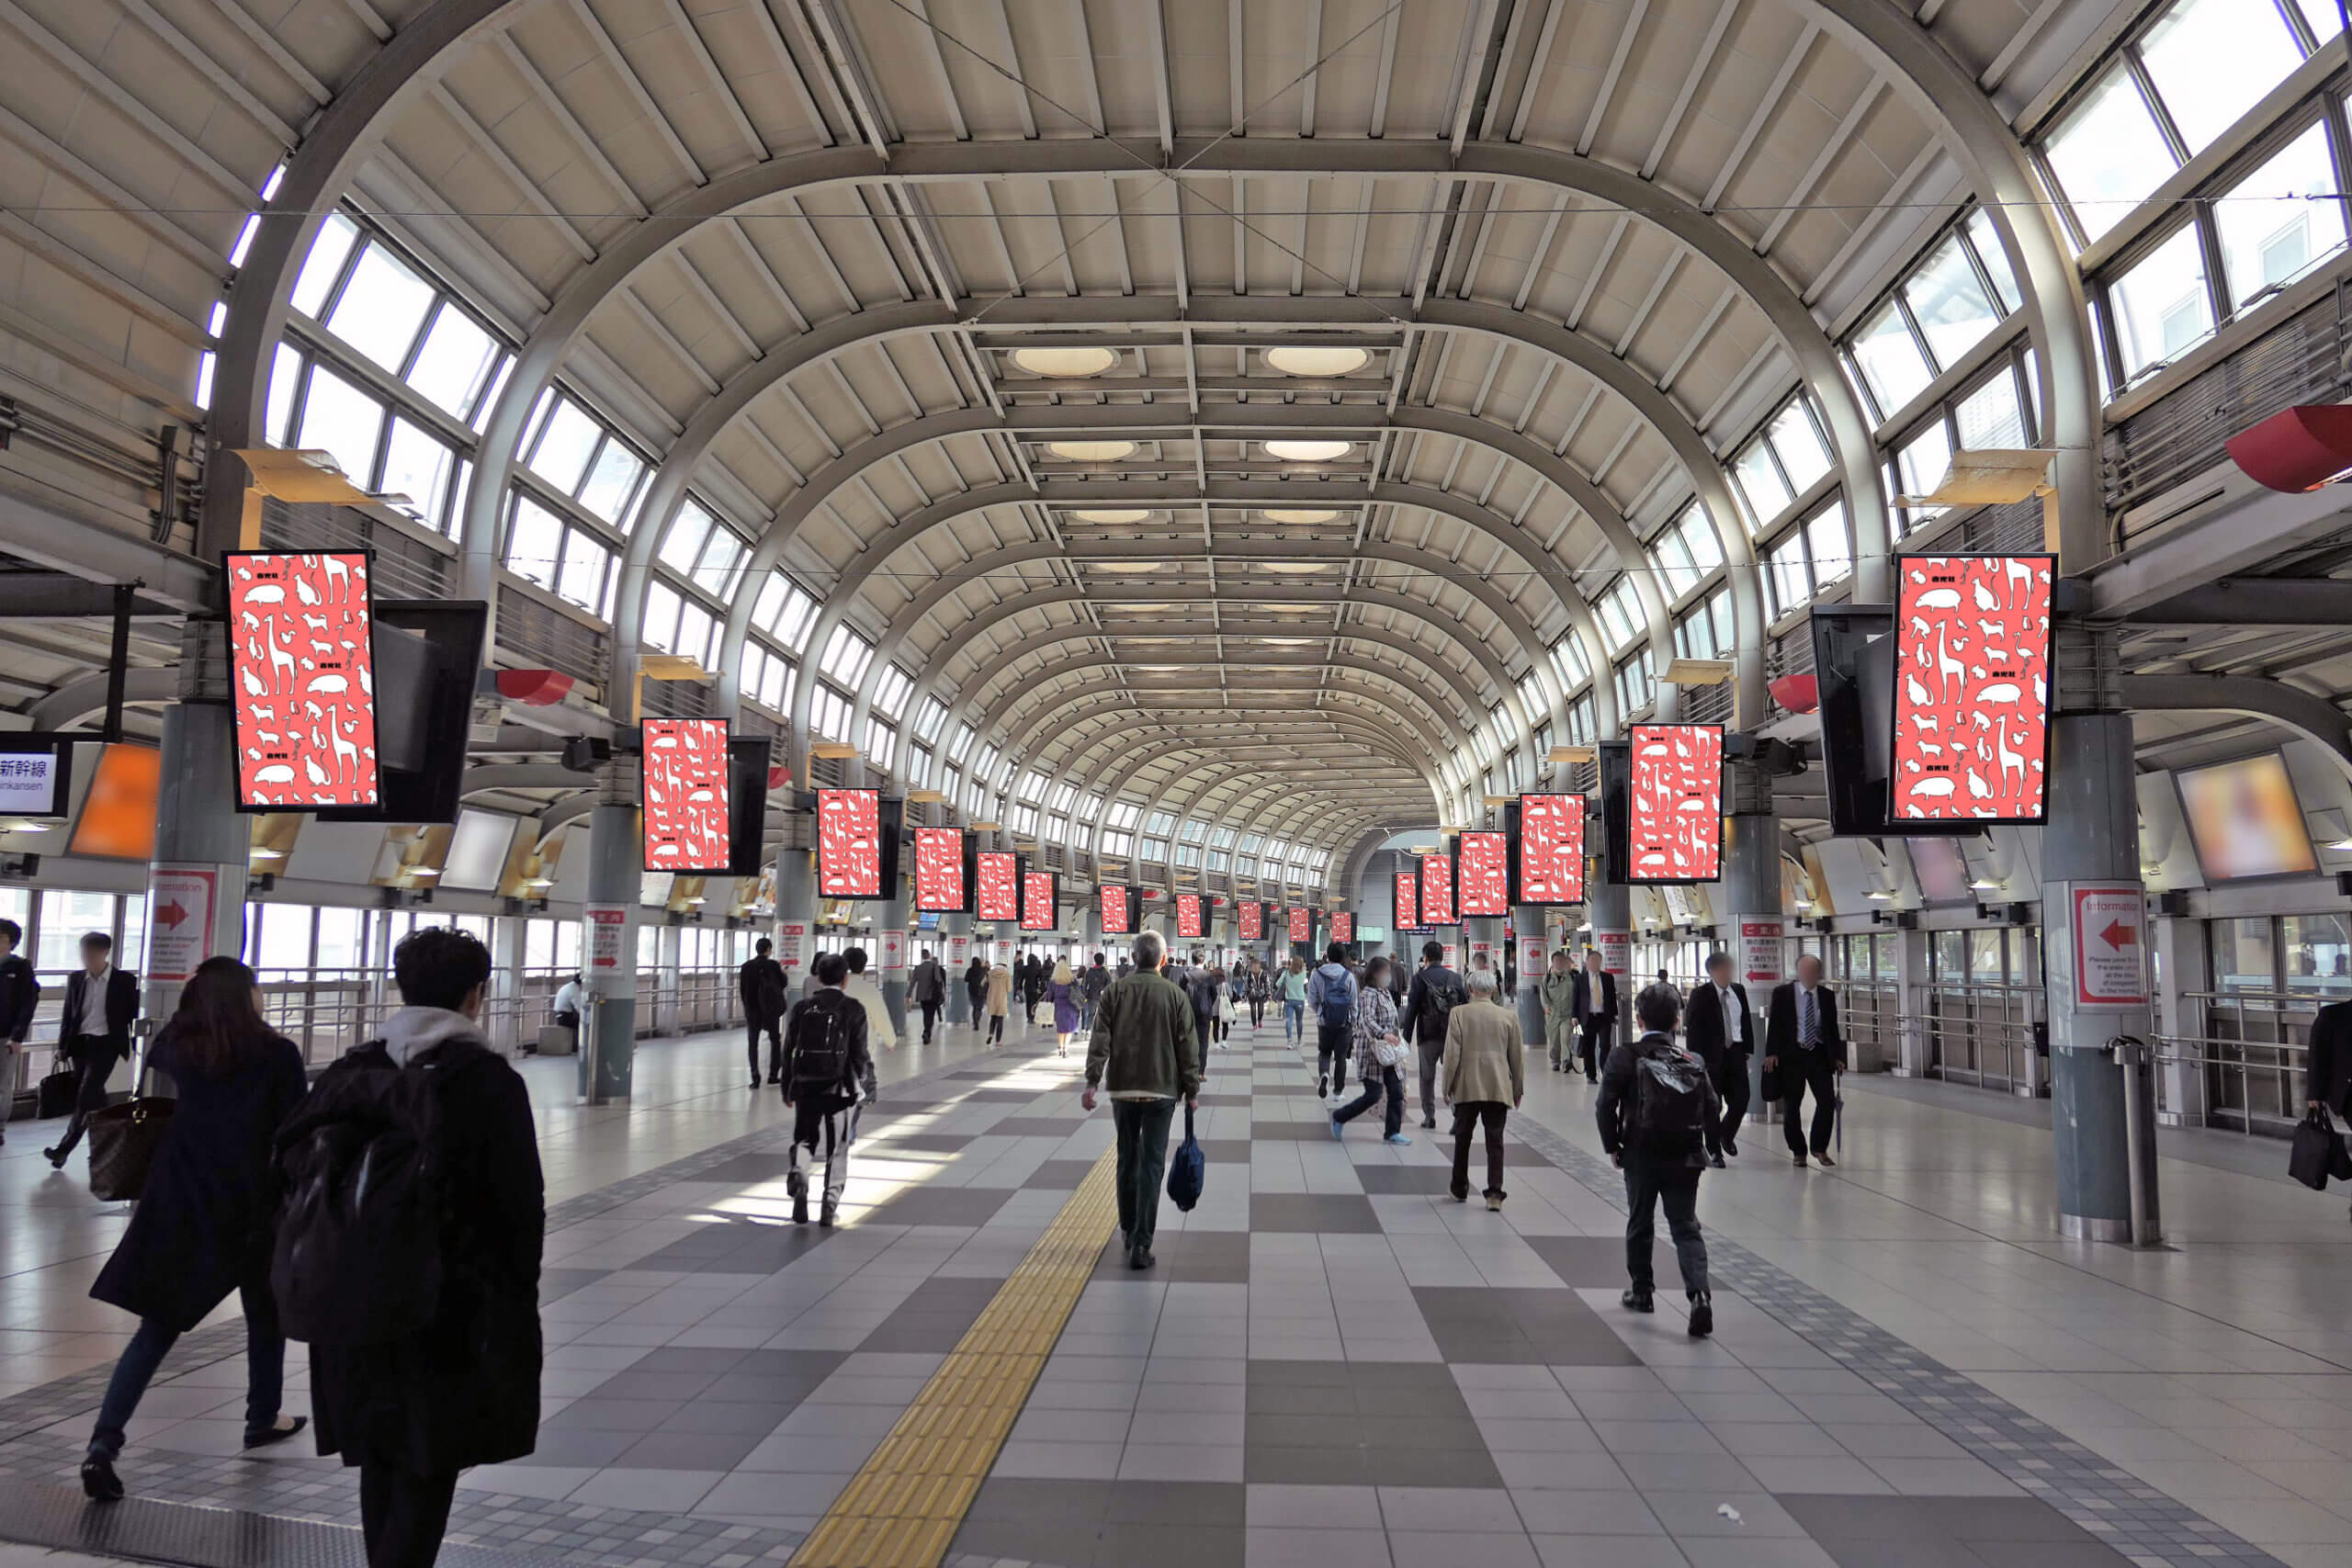 JR東日本品川駅コンコース自由通路に設置されている縦型のデジタルサイネージ